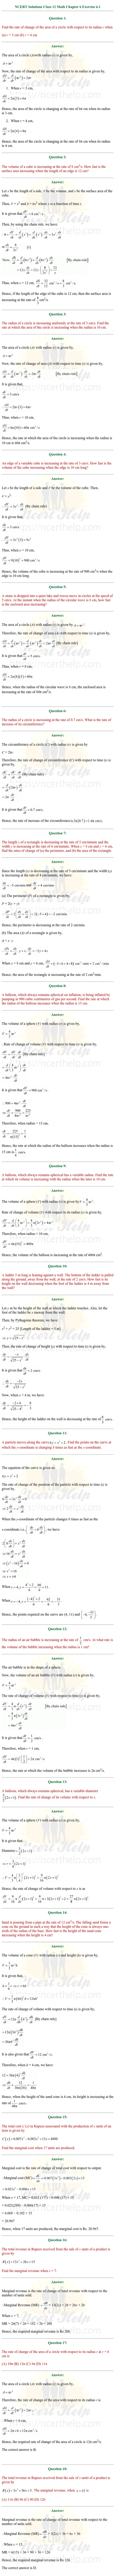 ex.6.1 Class 12 Math Chapter 6 ncert solutions